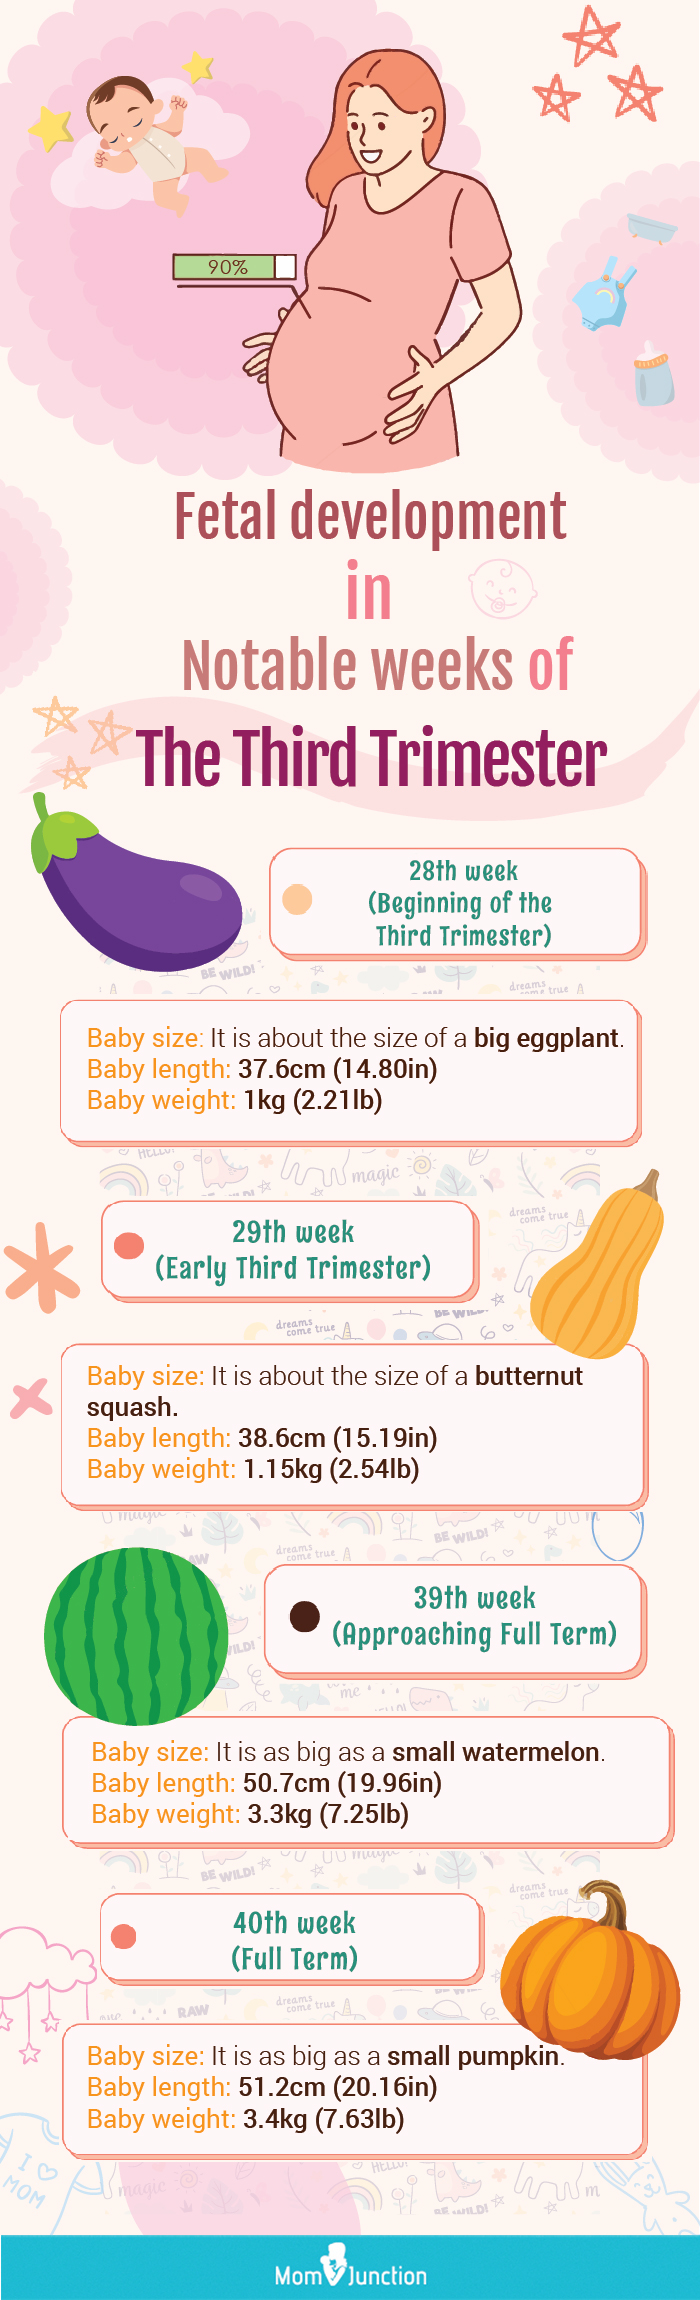 妊娠晚期显著周胎儿发育(信息图)